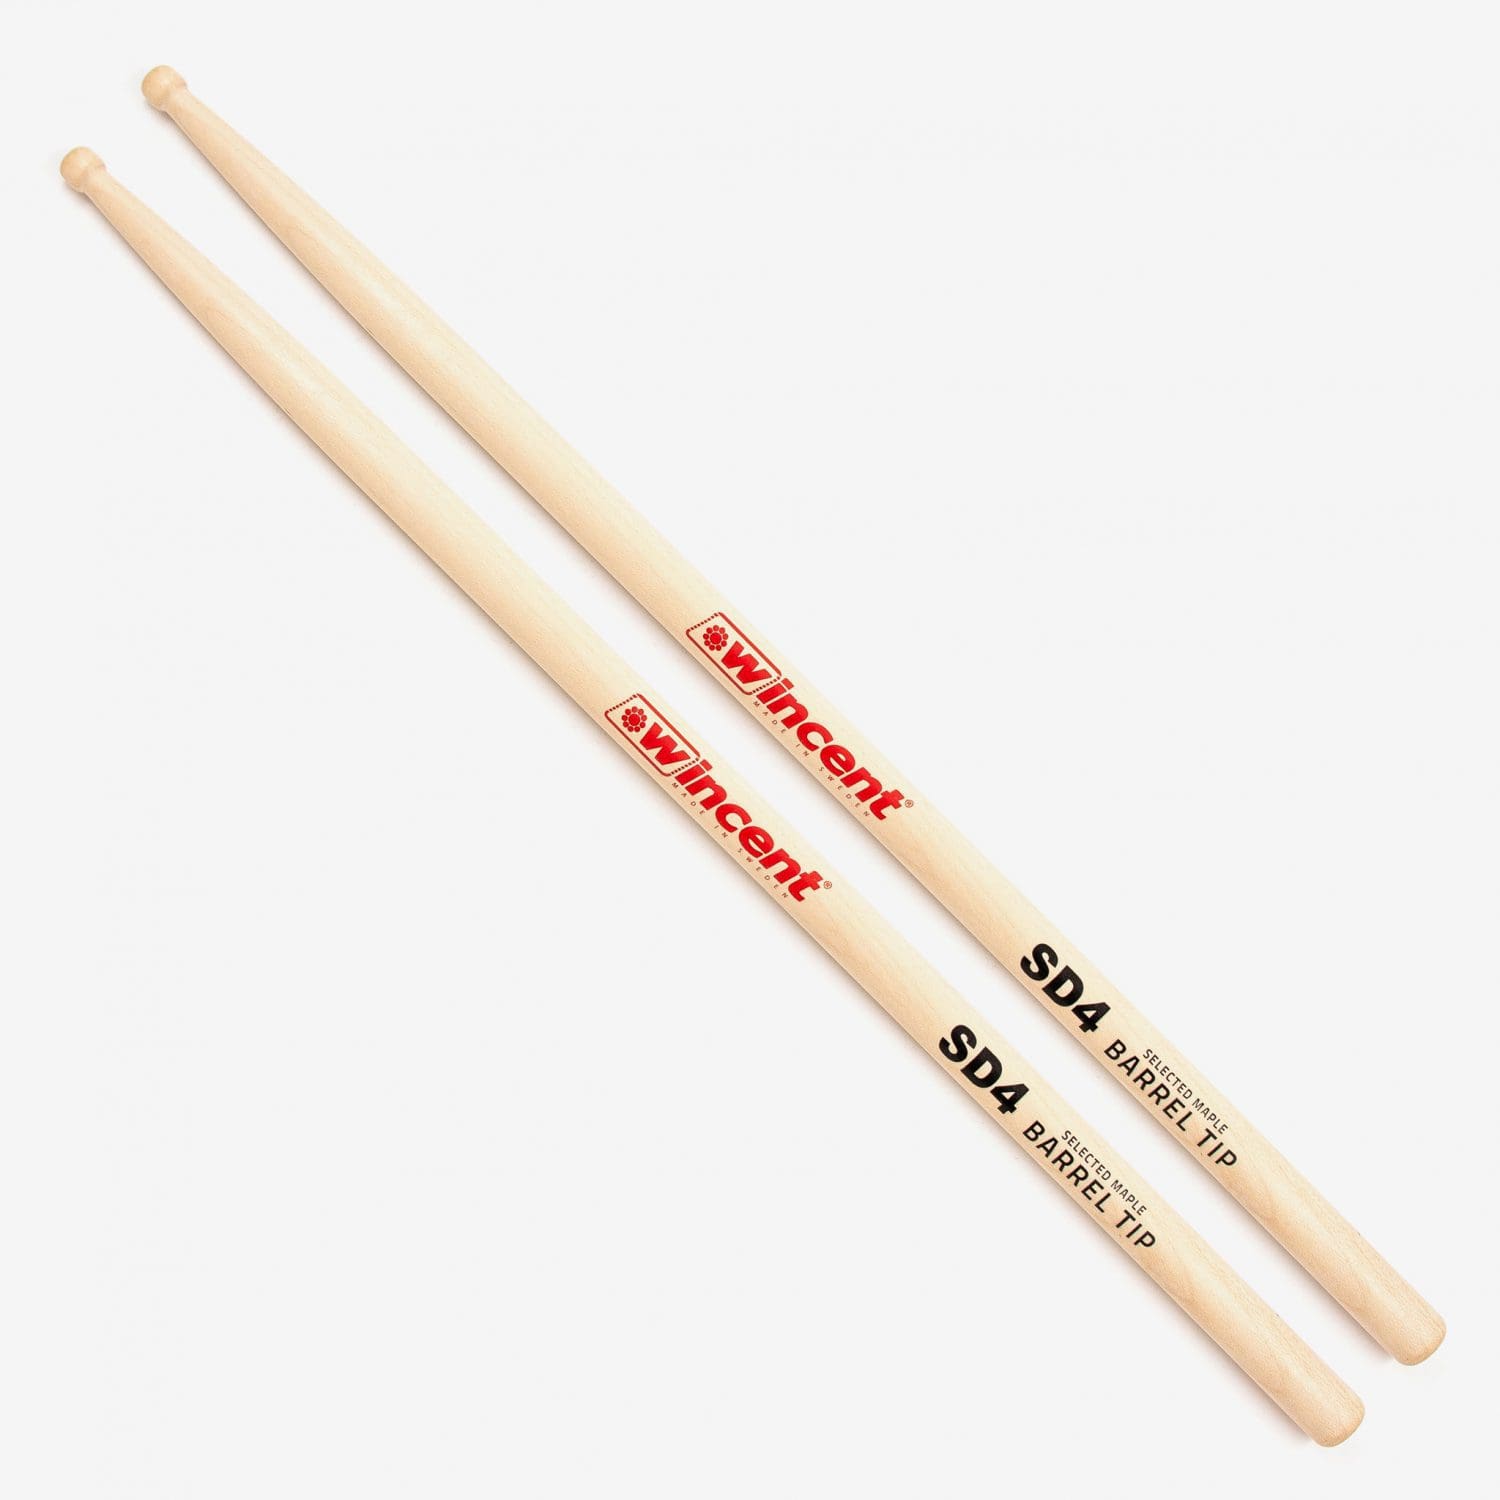 Maple Barrel Tip Snare Drum Drumsticks